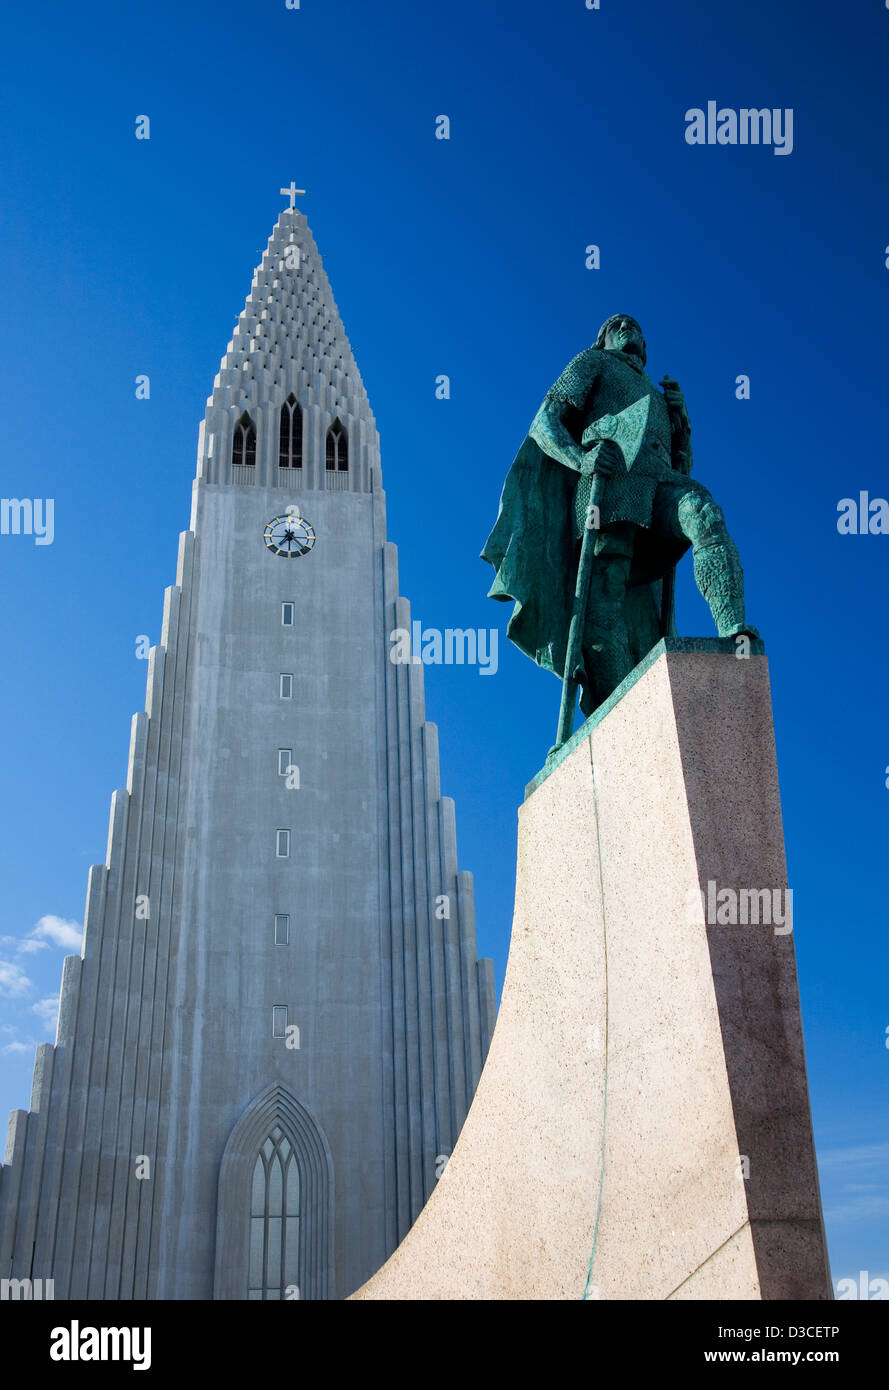 Hallgrimskirkja Church With Statue Of Leifer Eiriksson By Sculptor Alexander Calder In Foreground, Reykjavik, Iceland Stock Photo